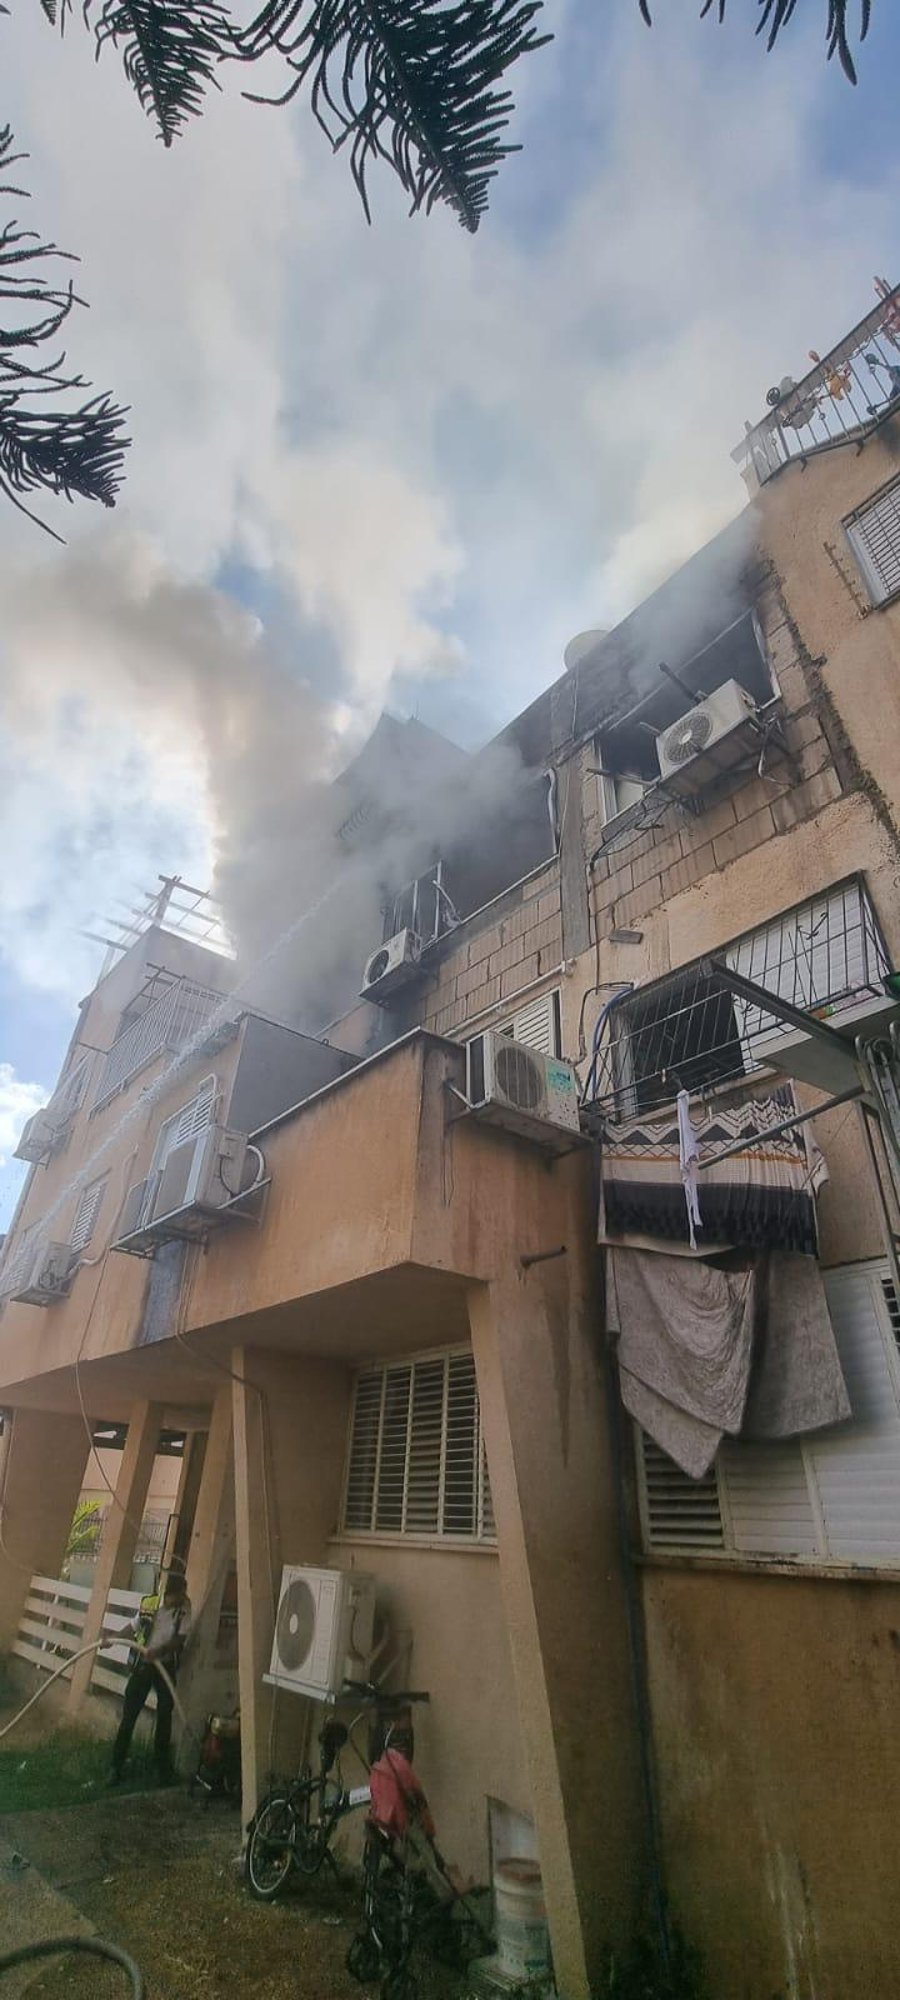 שריפה פרצה בדירה בבני ברק; נזק רב נגרם לרכוש